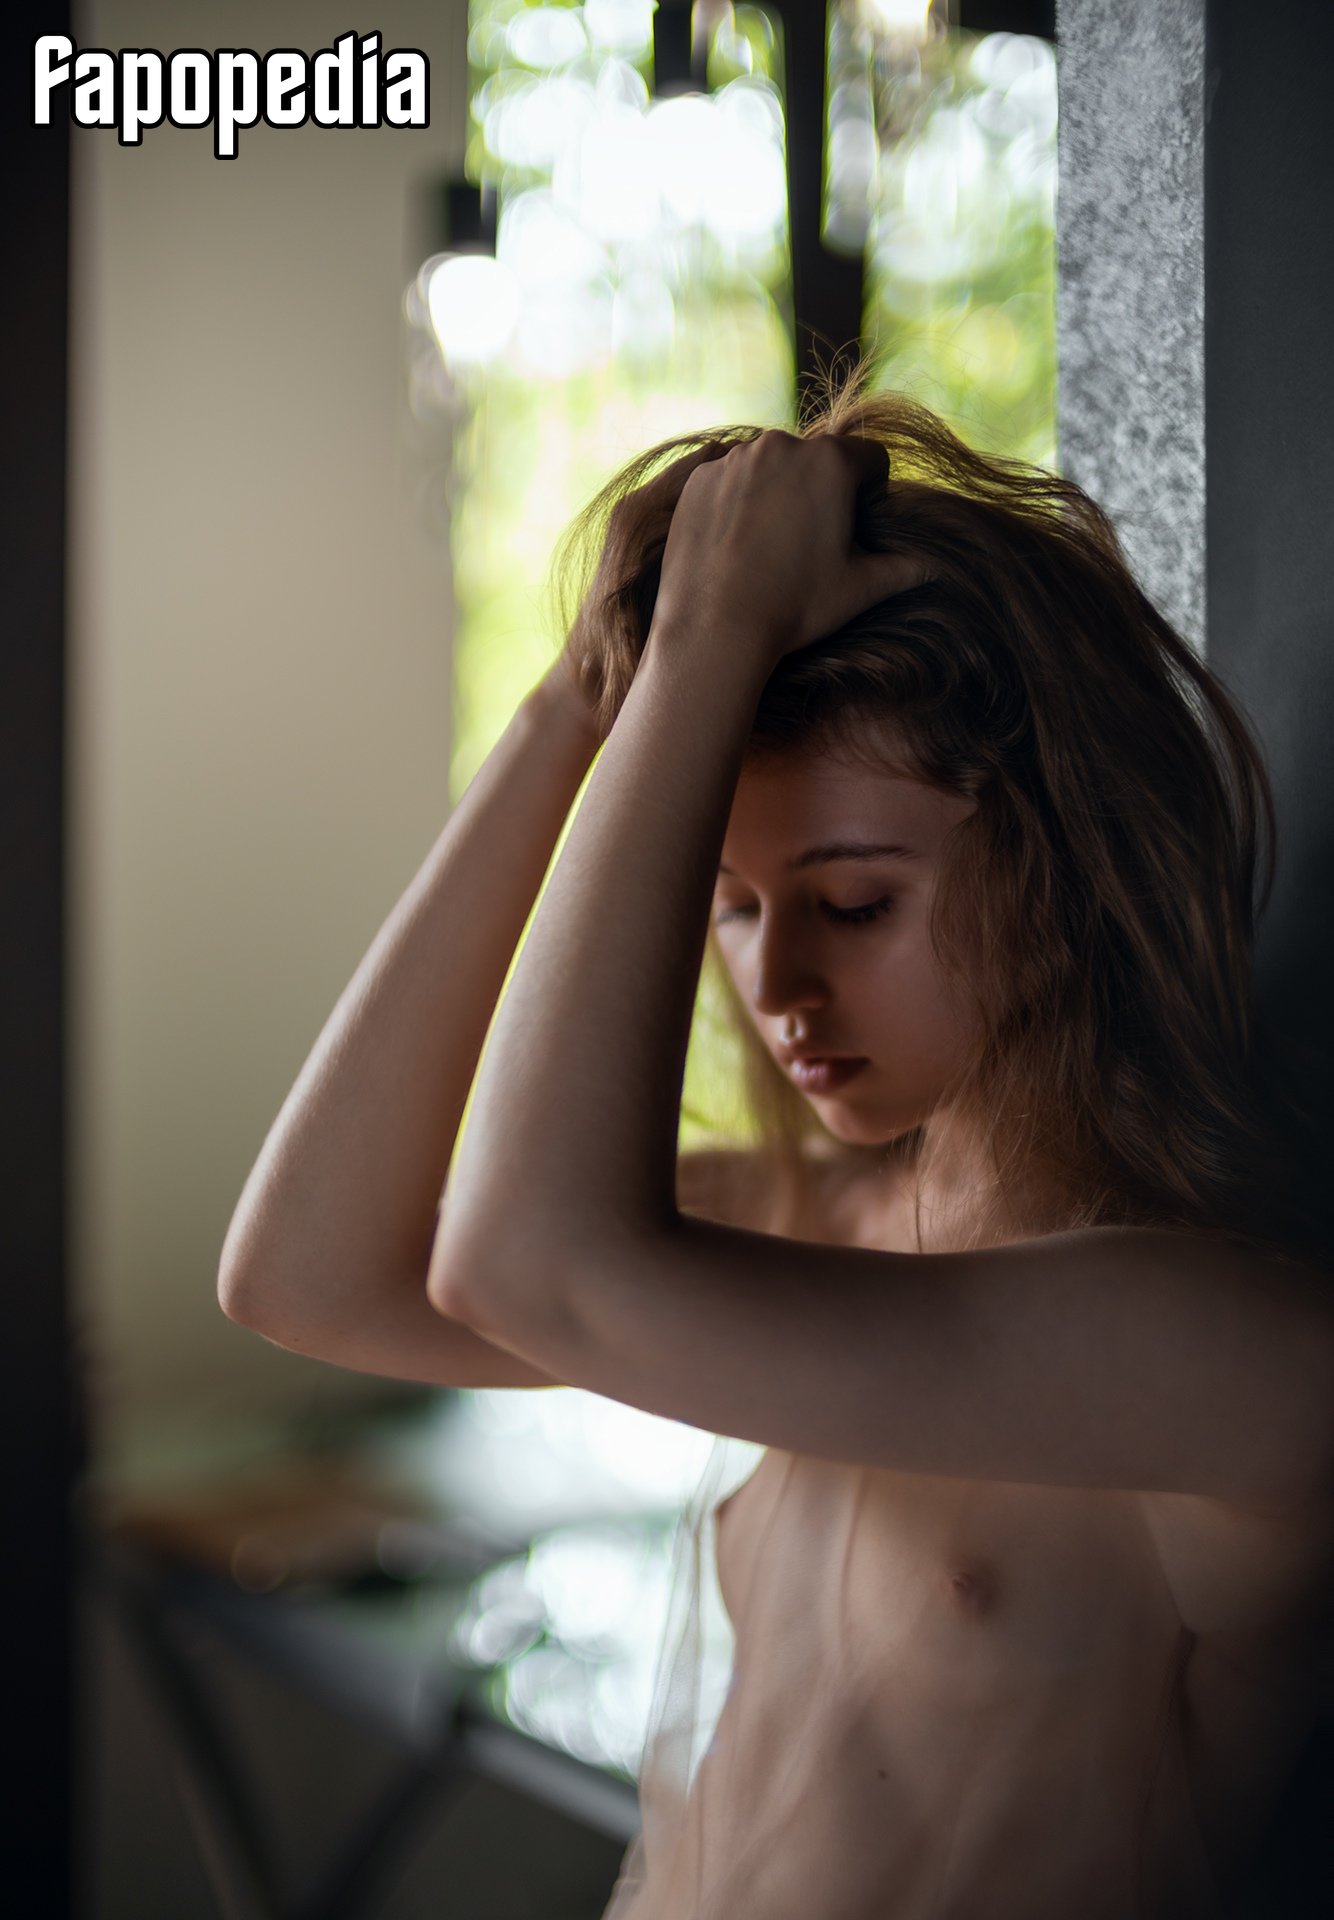 Olesya Parvatova Nude Leaks - Photo #220215 - Fapopedia